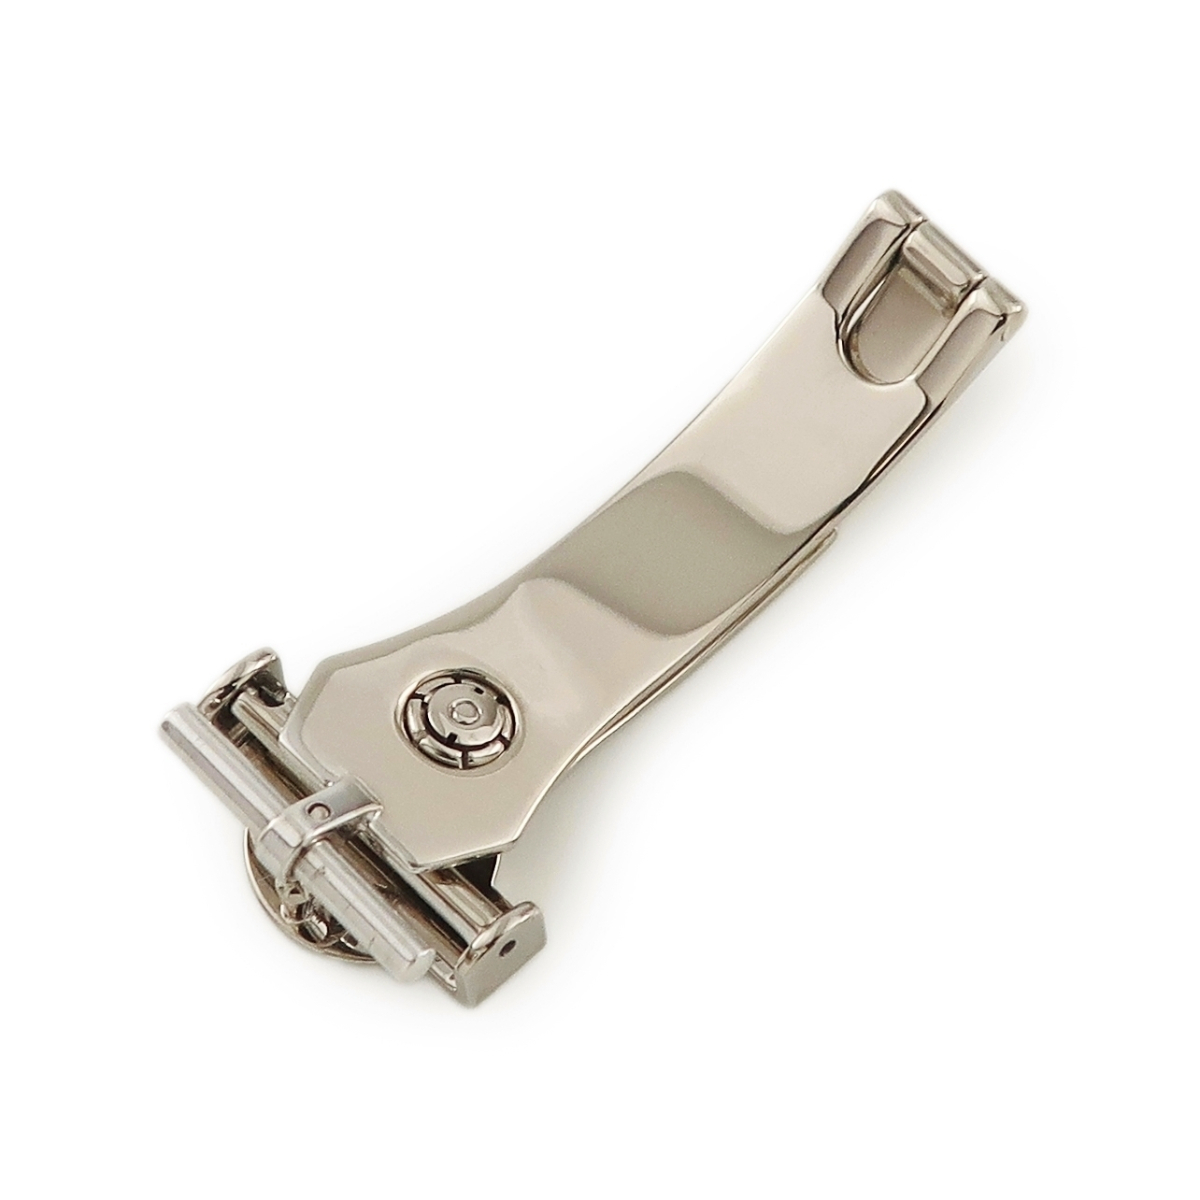 [3 год гарантия ] Harry Winston оригинальный K18WG чистота пряжка детали 16mm ширина соответствует женские наручные часы 